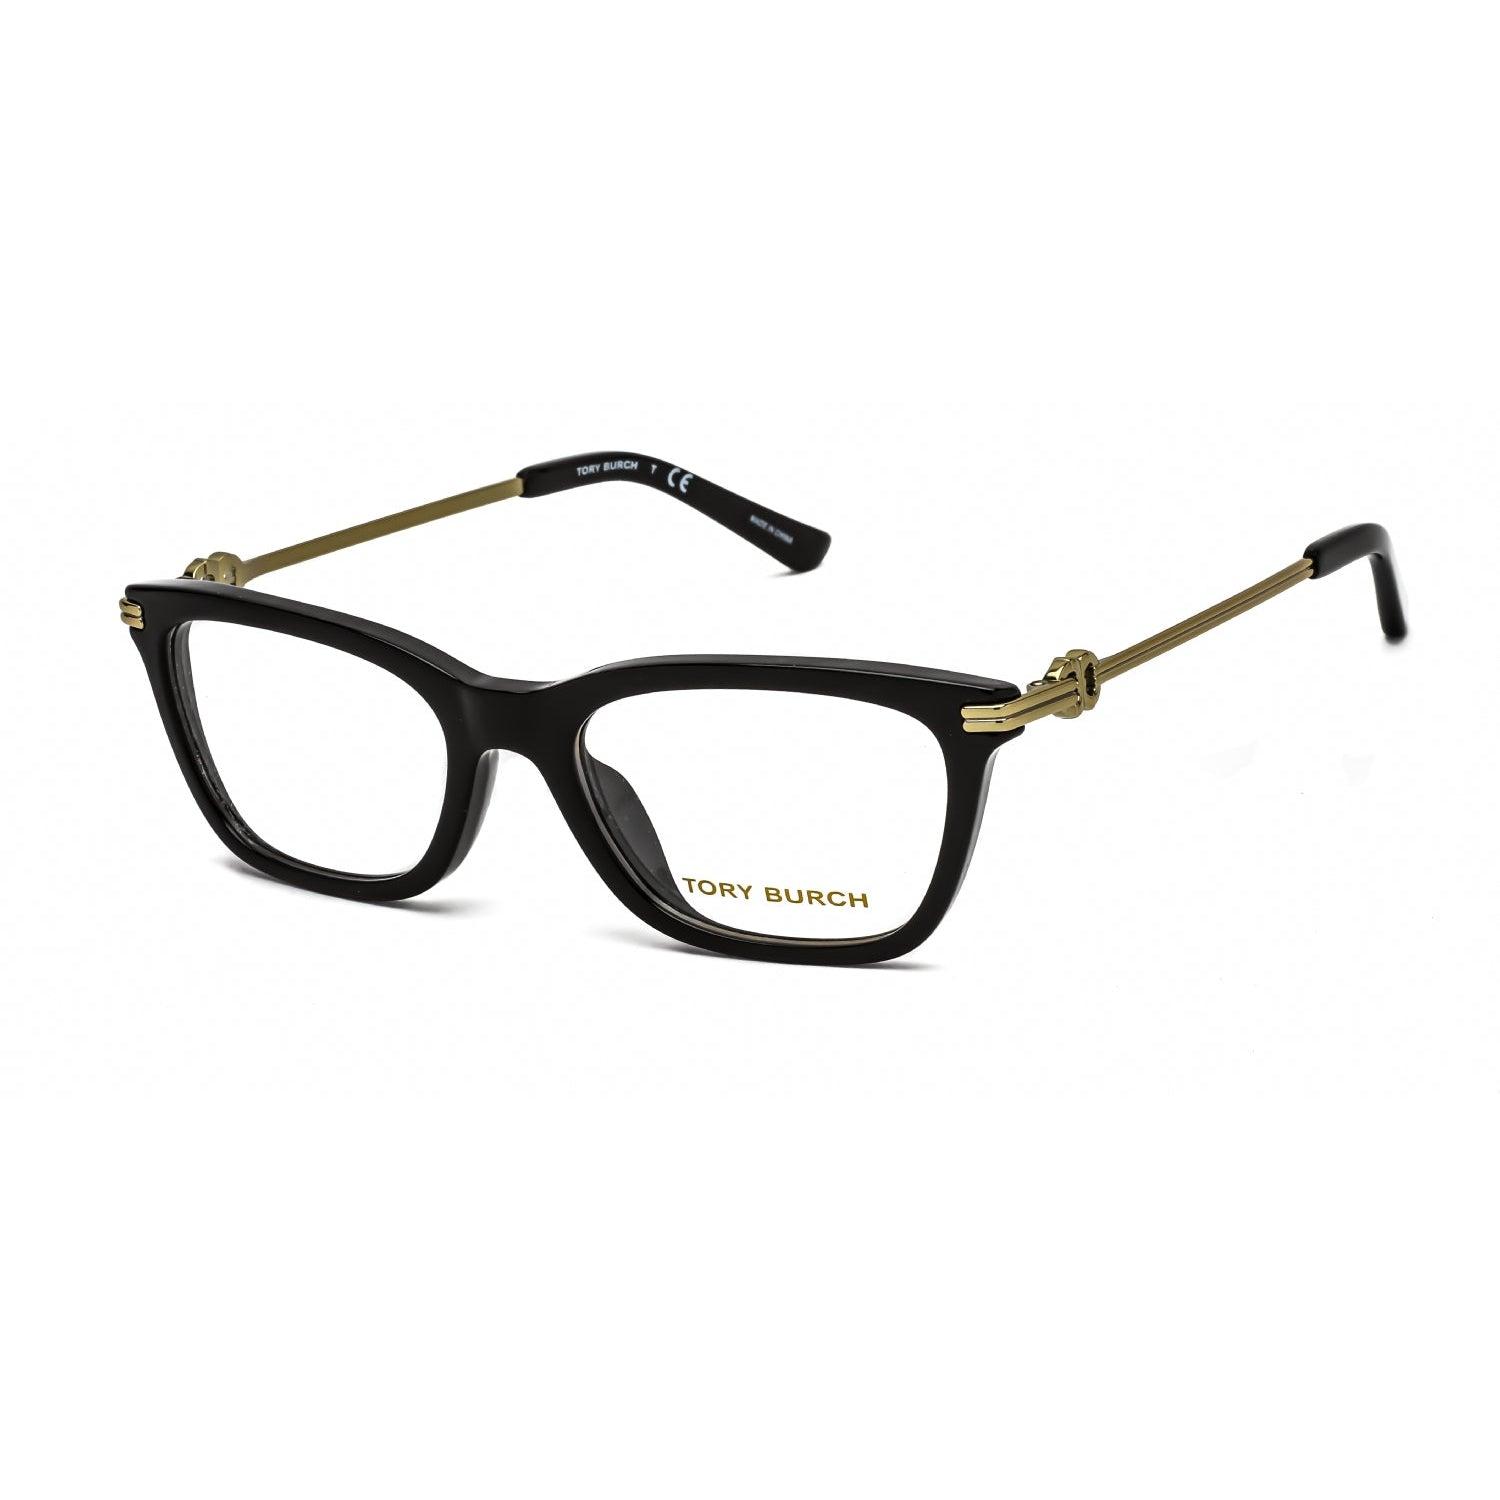 Tory Burch 0ty2117u Eyeglasses Black / Clear Demo Lens | Lyst